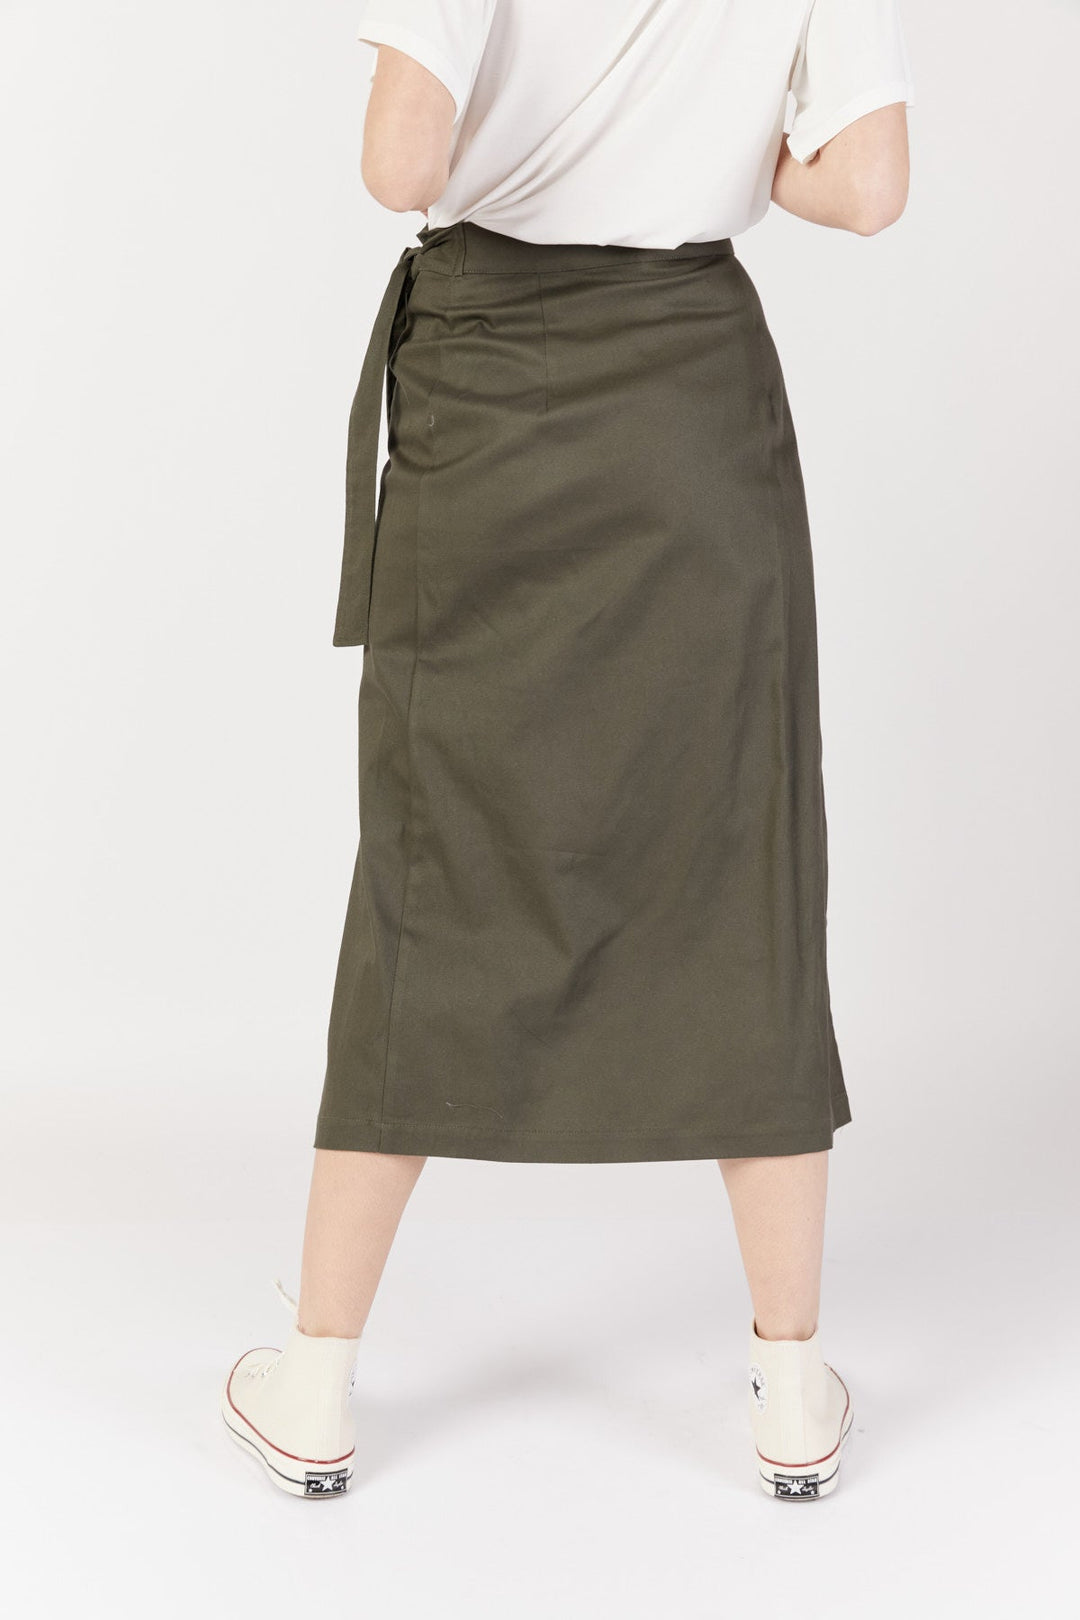 חצאית מעטפת קברנה בצבע זית - Razili Studio